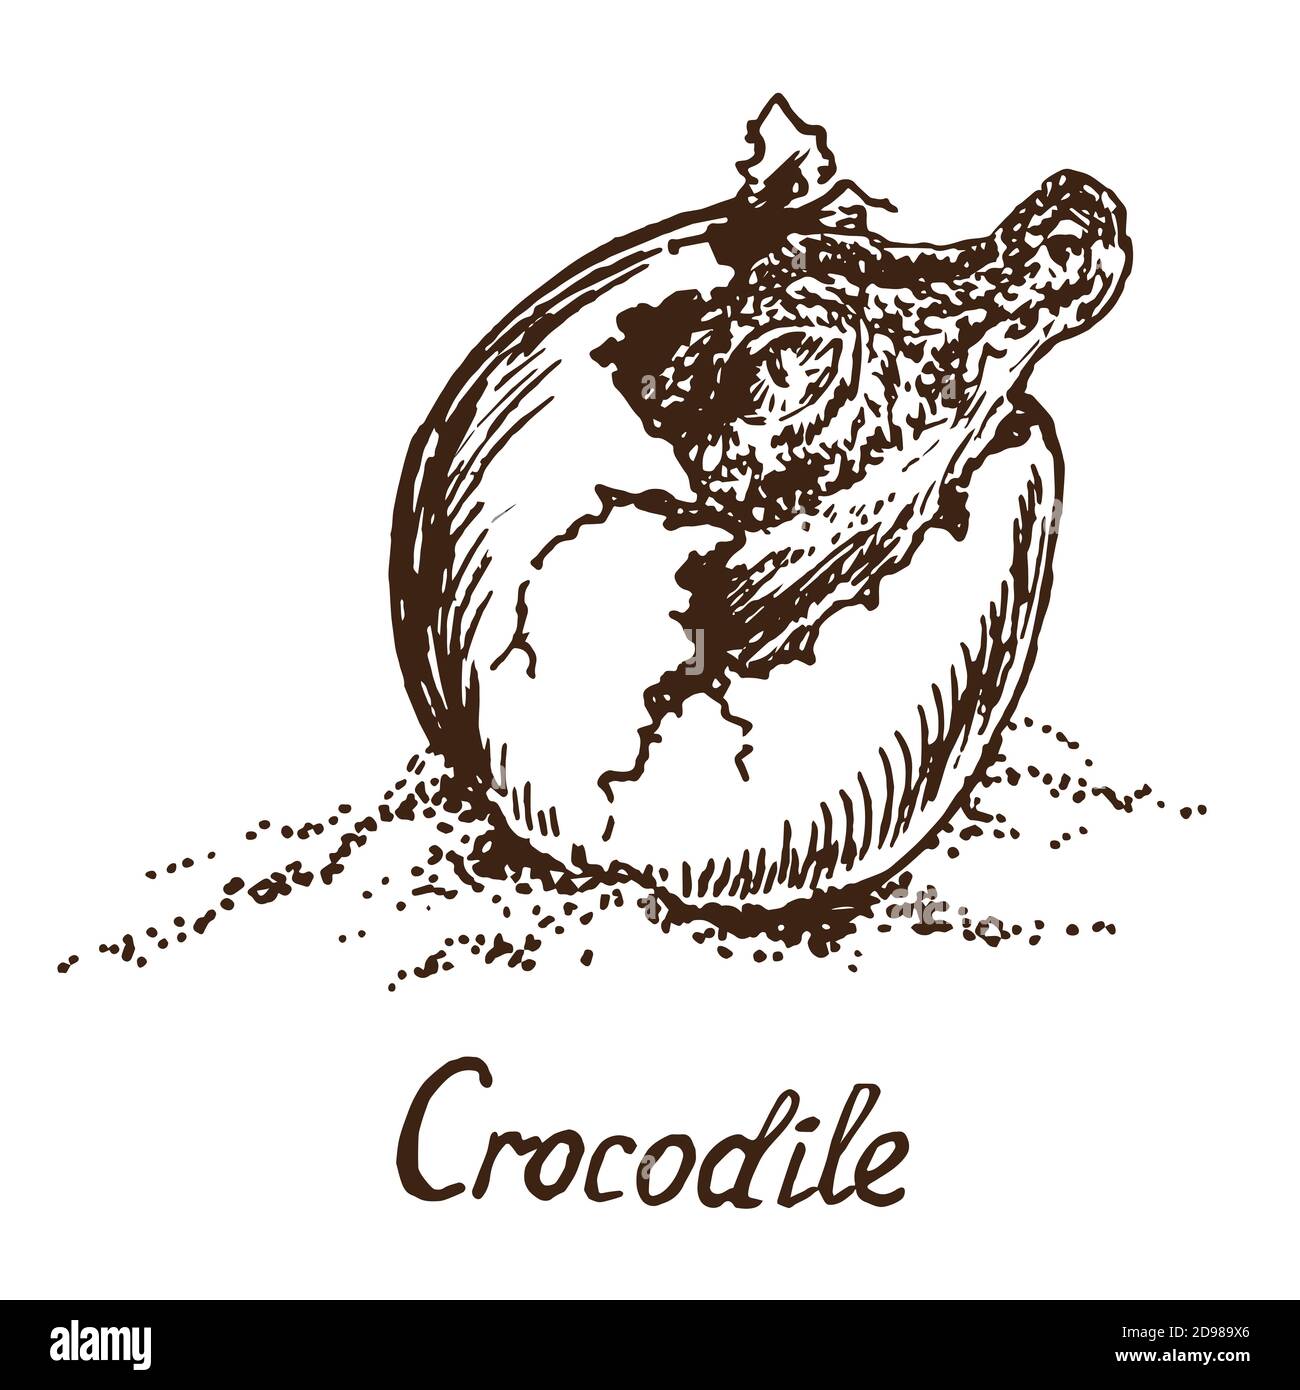 Cocodrilo (cocodrilo verdadero) eclozado de un huevo, dibujo de fideos simples con inscripción, estilo huecograbado Foto de stock